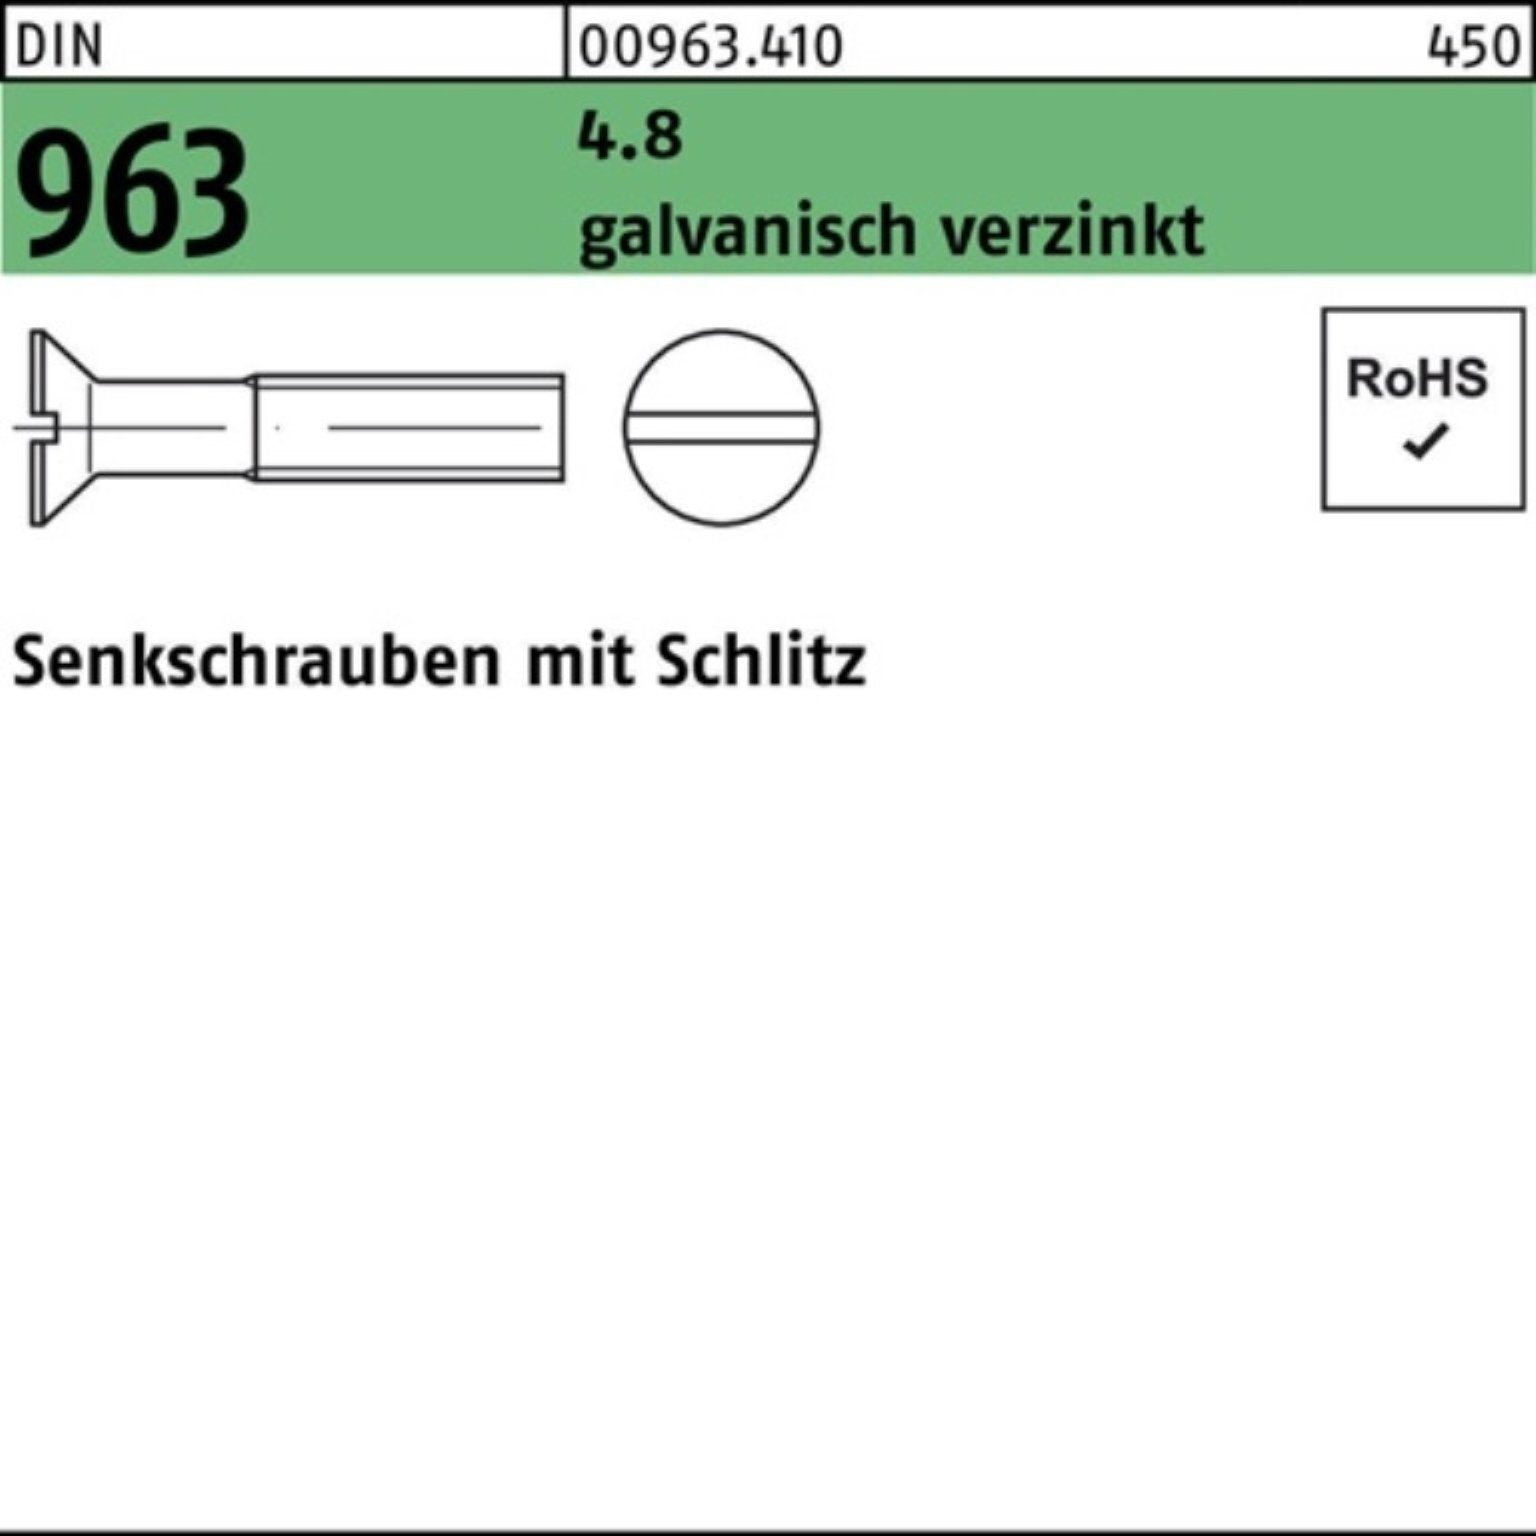 Reyher Senkschraube 8 M4x DIN 4.8 Pack St 2000 Senkschraube galv.verz. 2000er 963 Schlitz